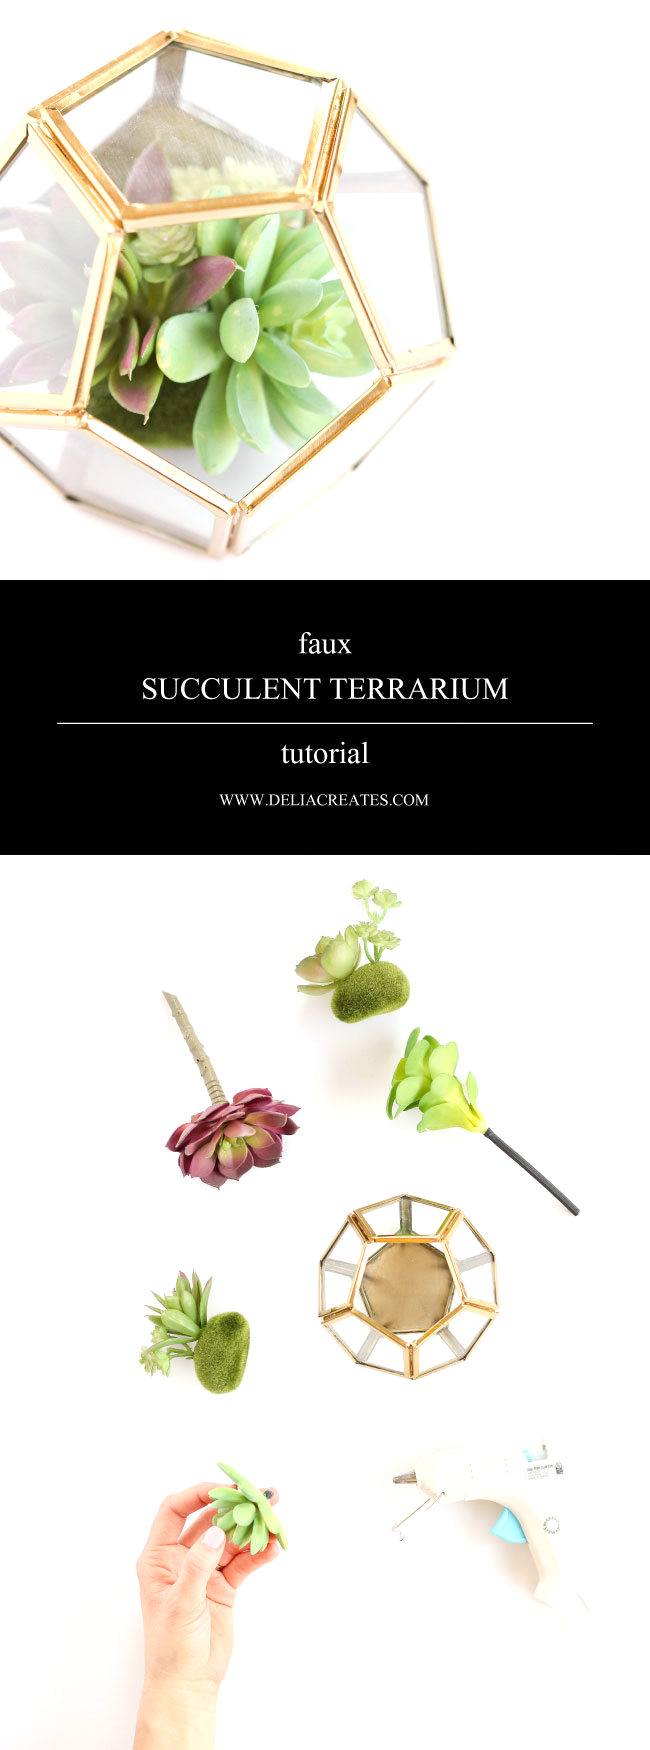 Faux Succulent Terrarium TUTORIAL // www.deliacreates.com